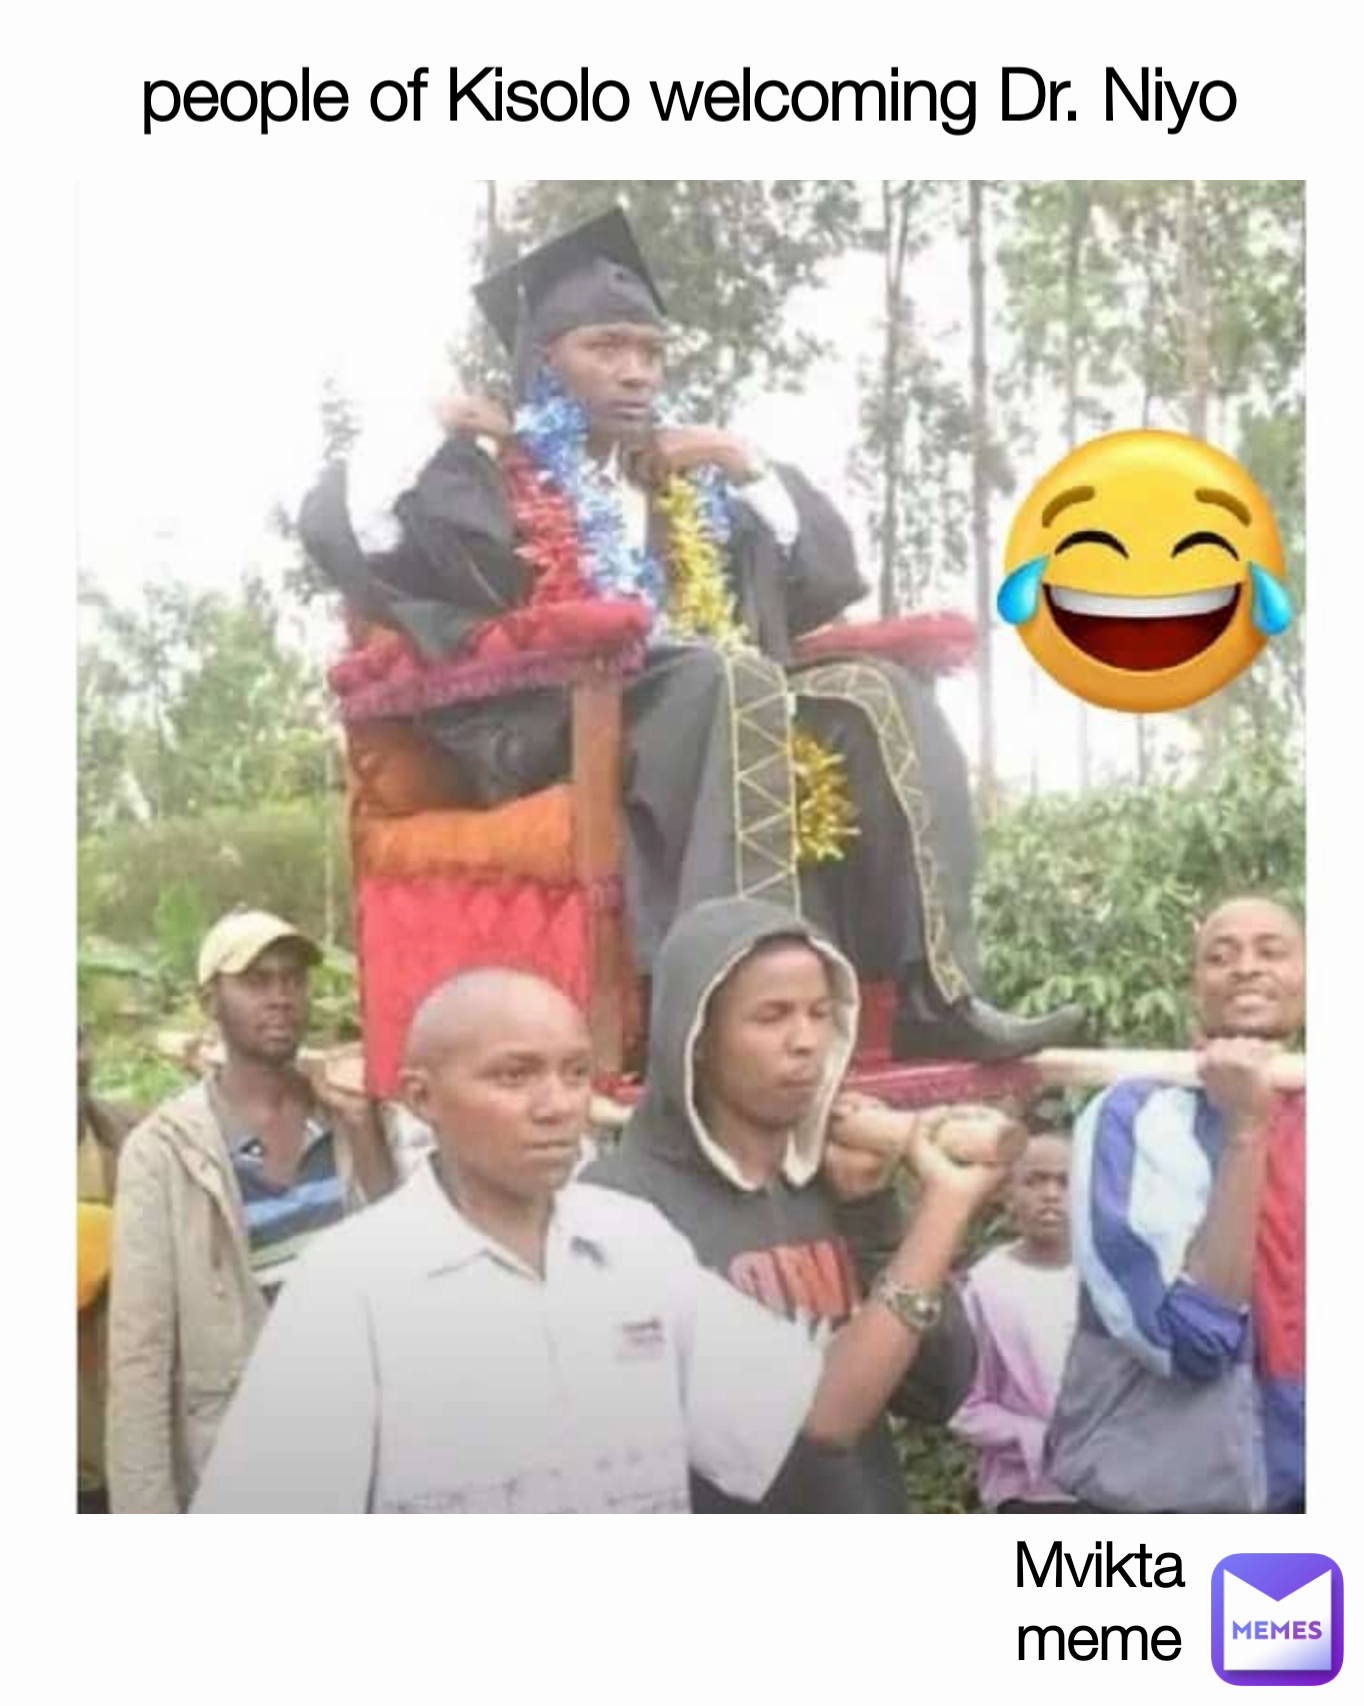 people of Kisolo welcoming Dr. Niyo Mvikta
meme